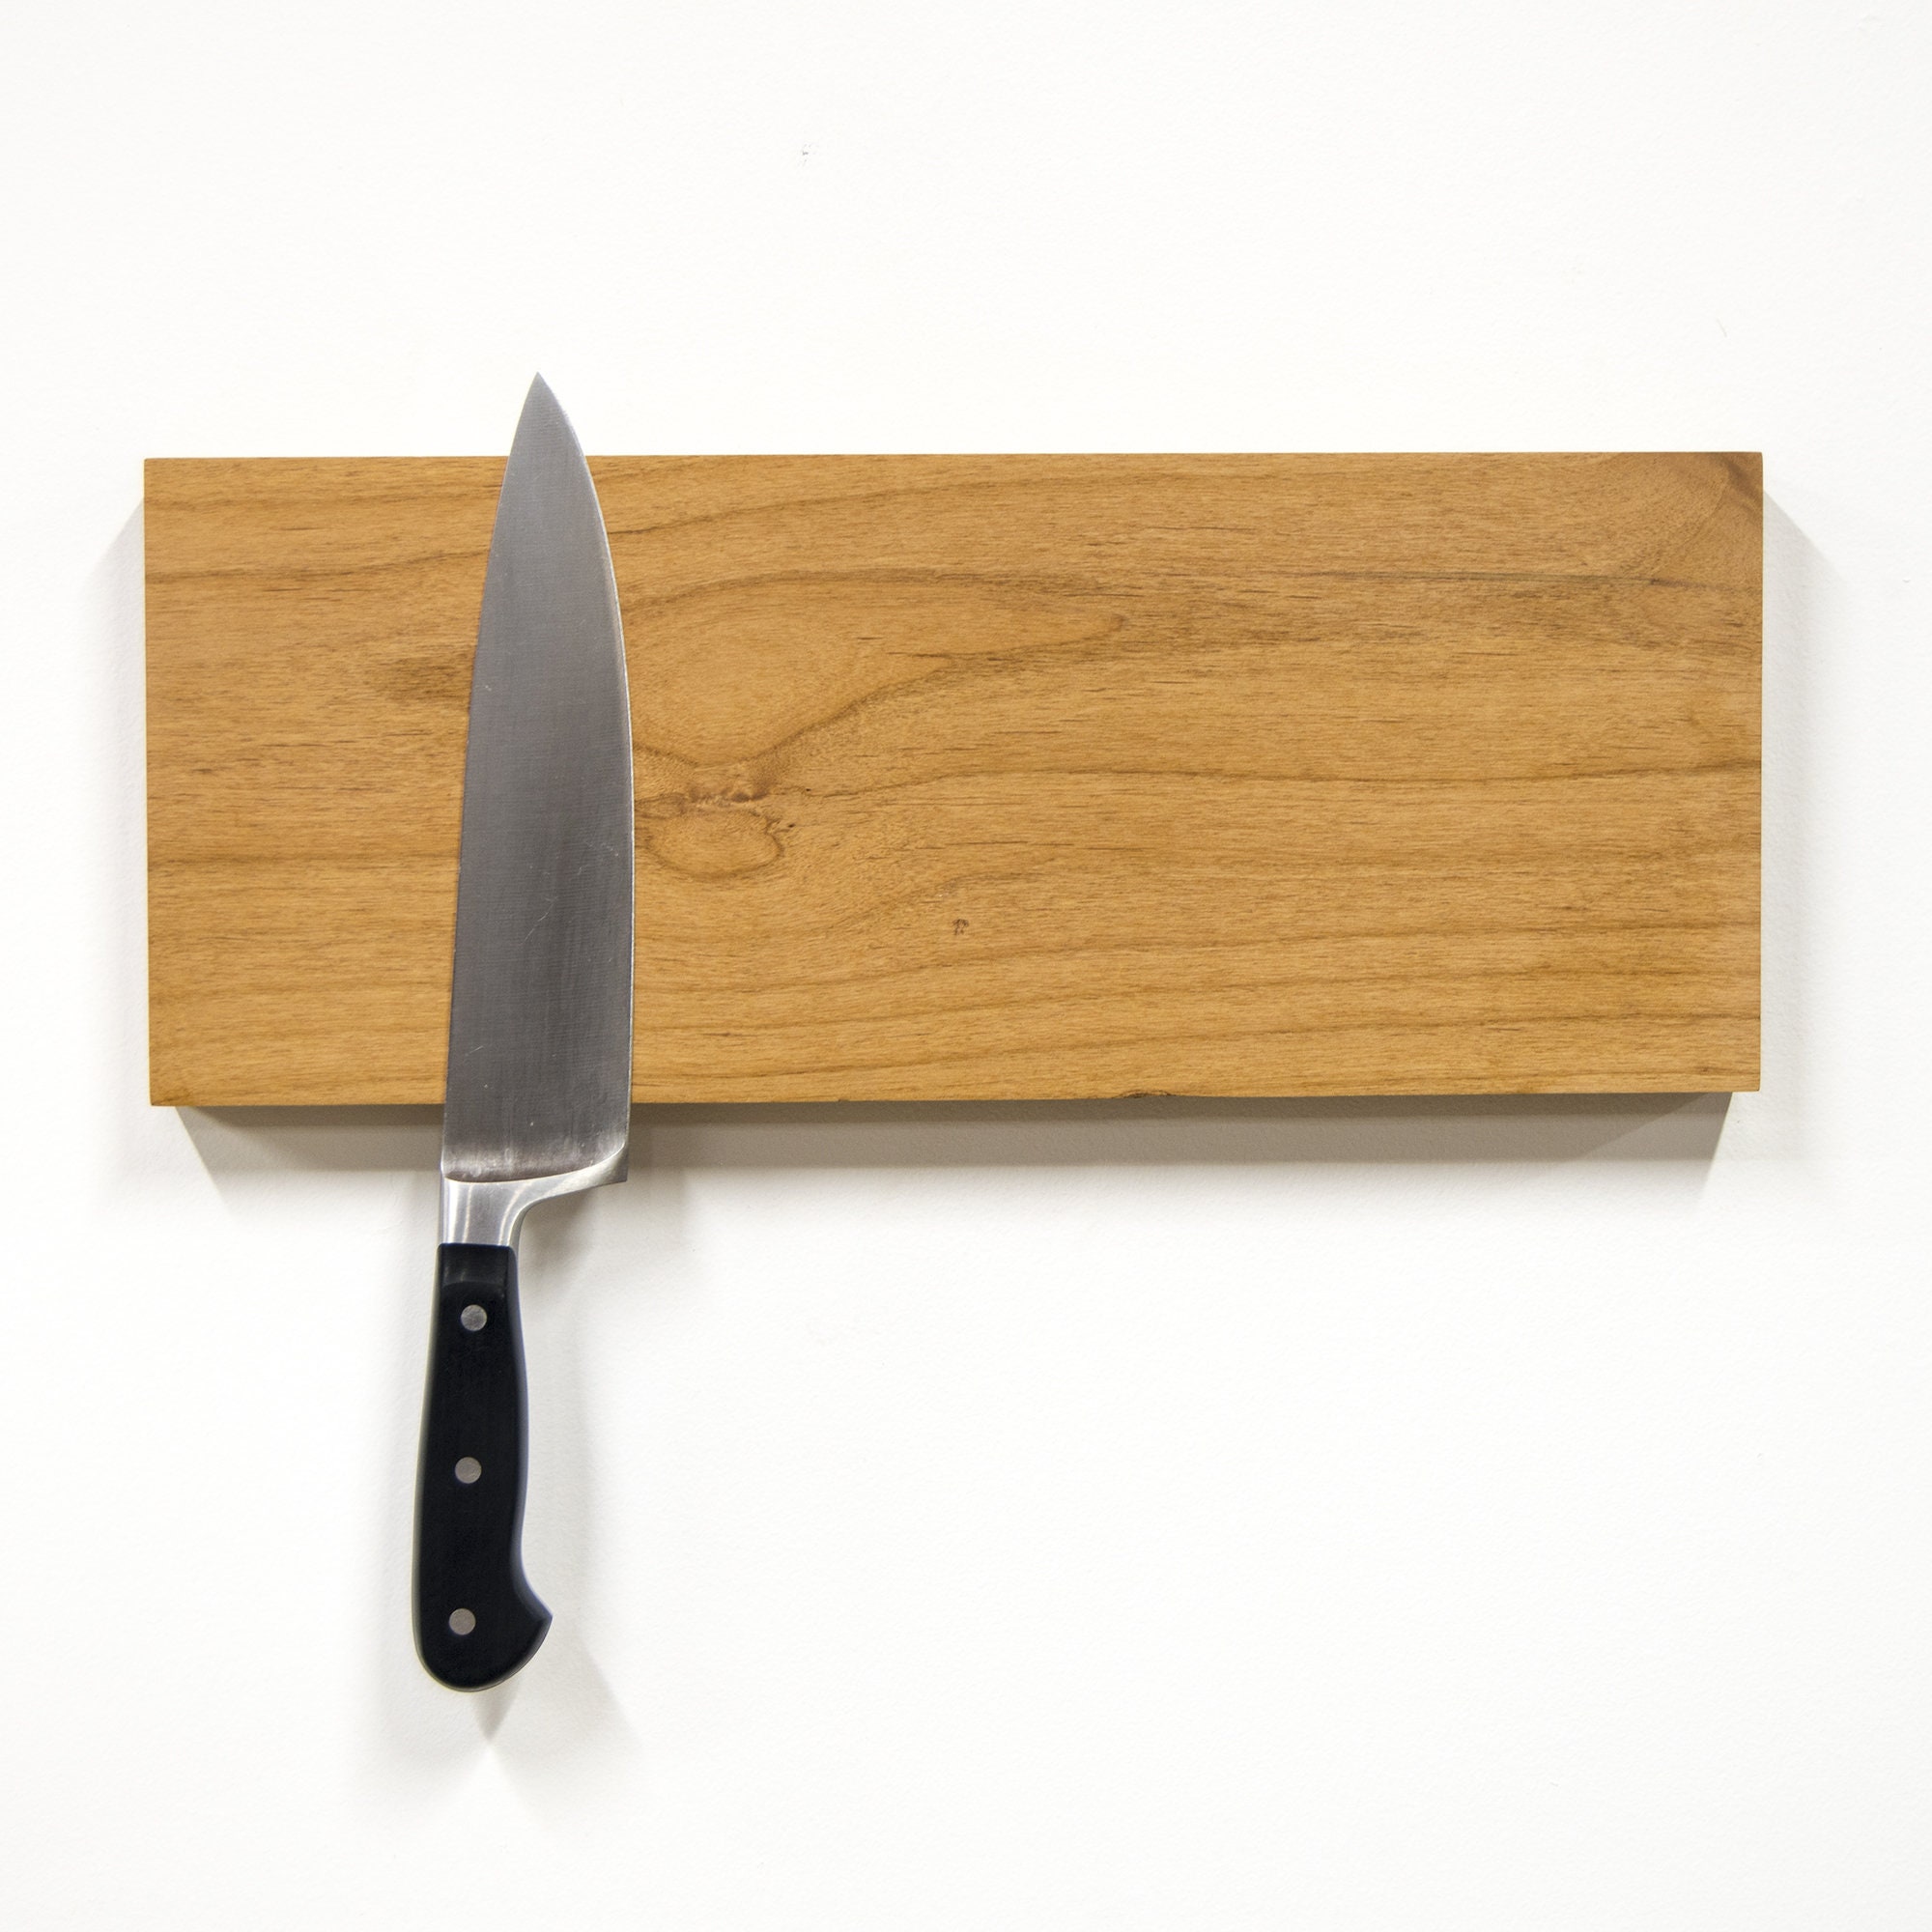 Calamita per coltelli in legno rovere affumicato per coltelli 4,6,9  lunghezze da 21 a 46 cm, accattivante in cucina, magnetica, autoadesiva  senza perforazione -  Italia